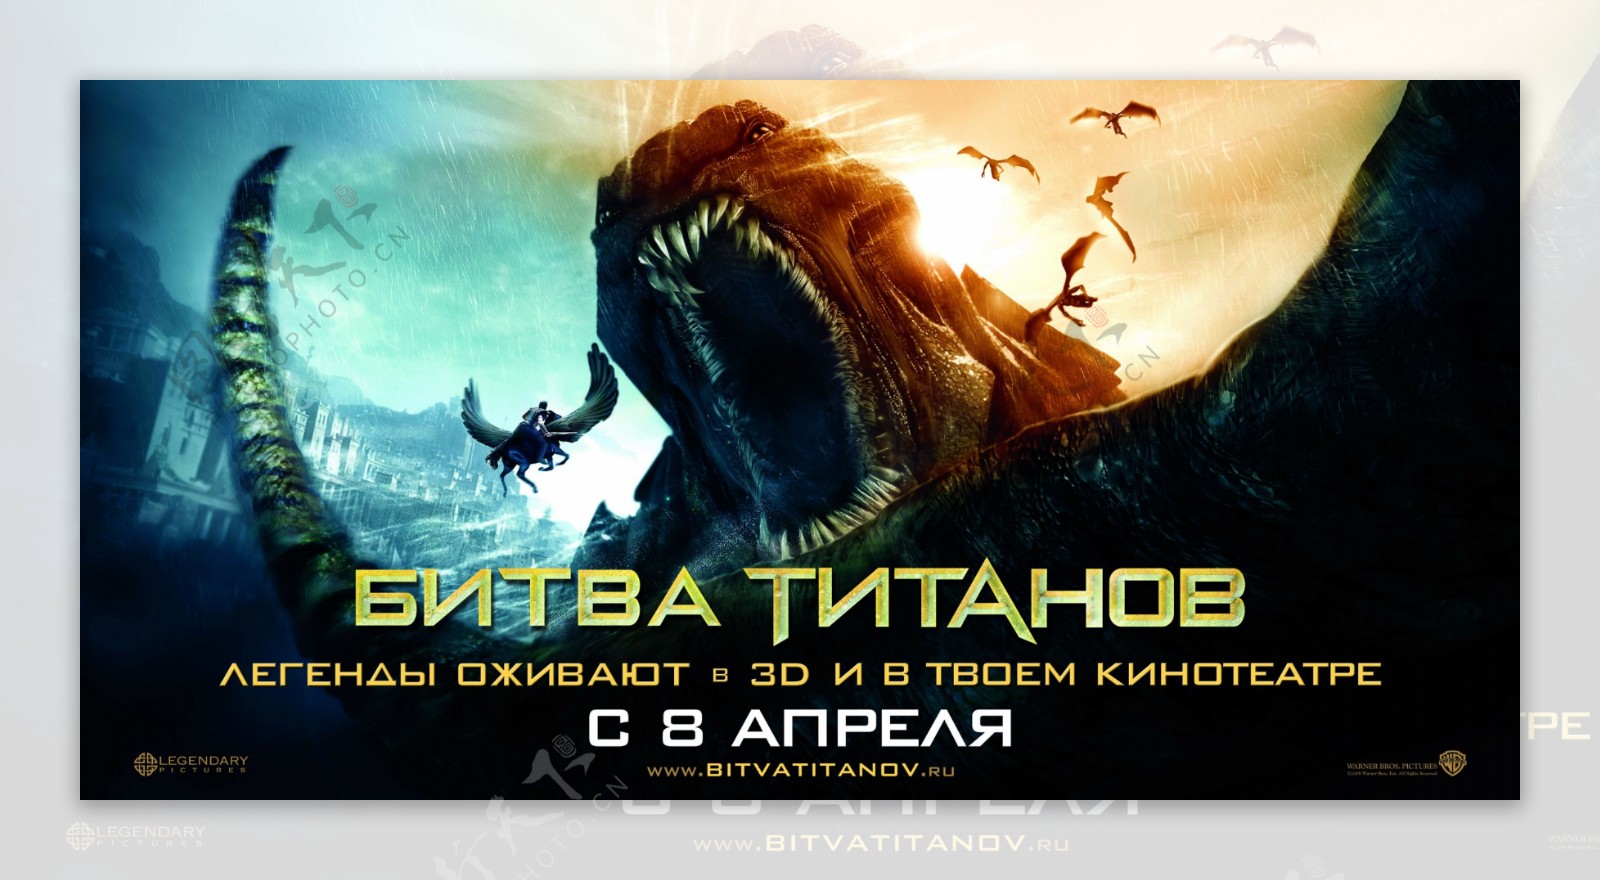 诸神之战俄罗斯版海报